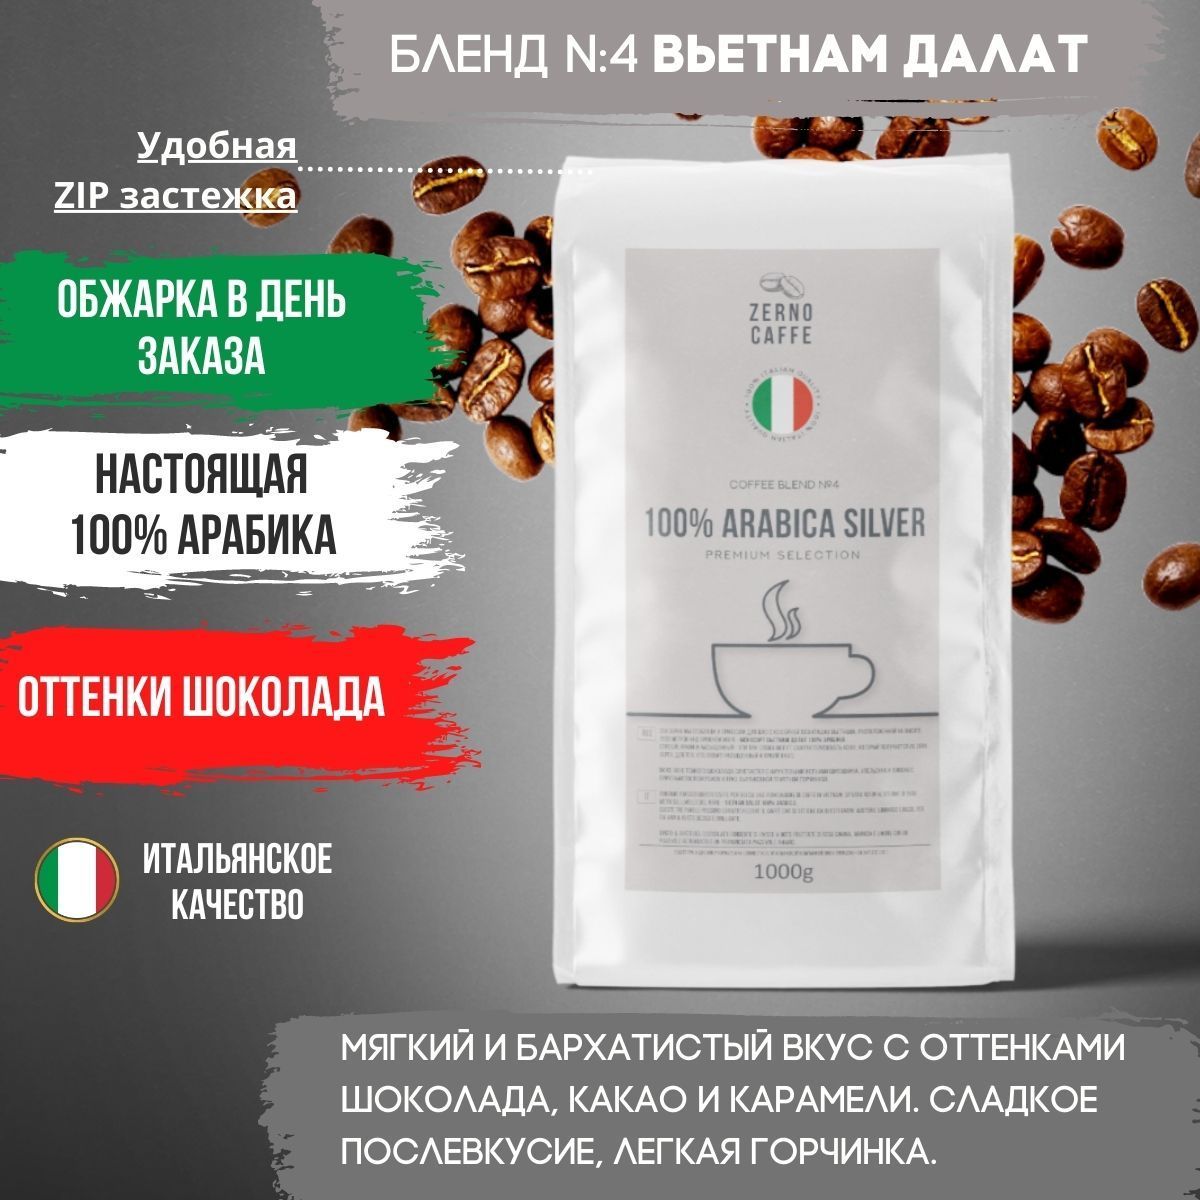 ОБЖАРКА В ДЕНЬ ЗАКАЗА кофе в зернах 250гр Вьетнам Далат 100% арабика